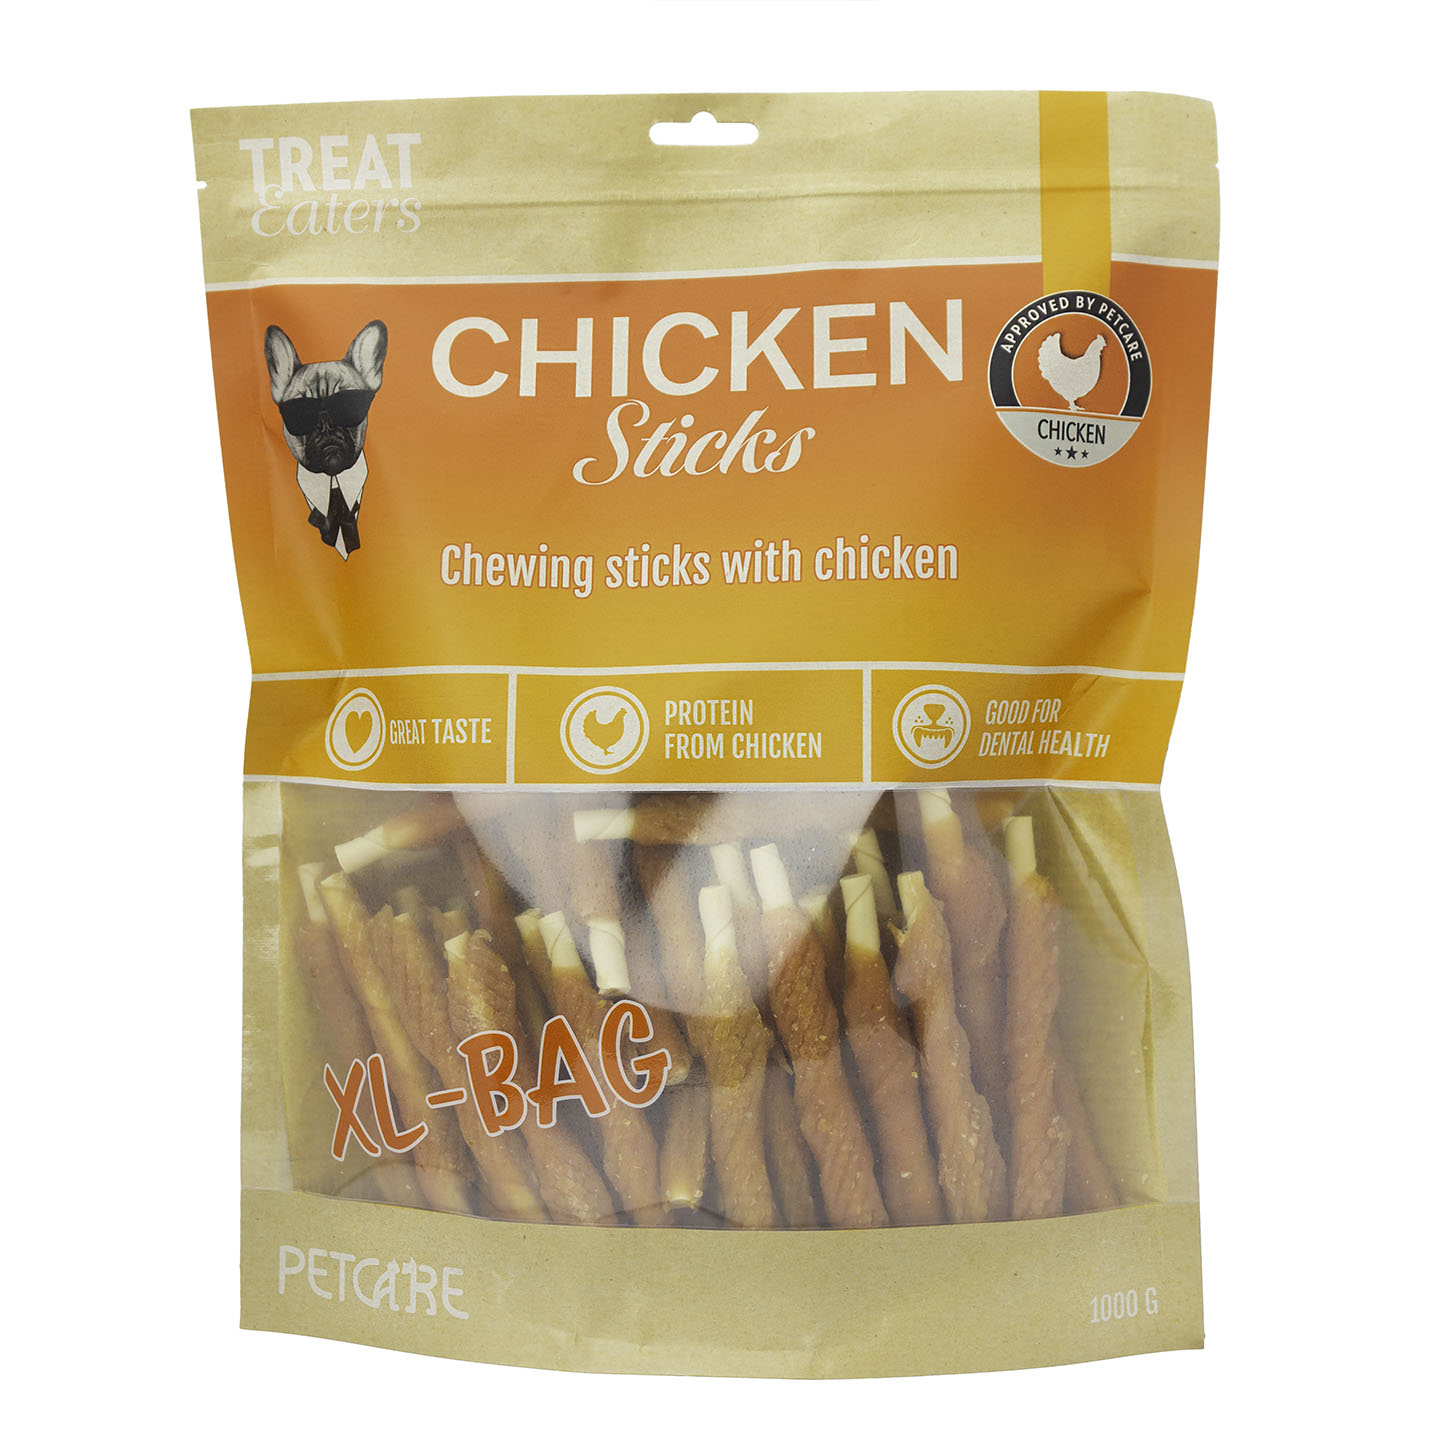 Billede af Petcare - Treateaters Chicken Sticks - XL Pose, 1000 g - Dog Treats